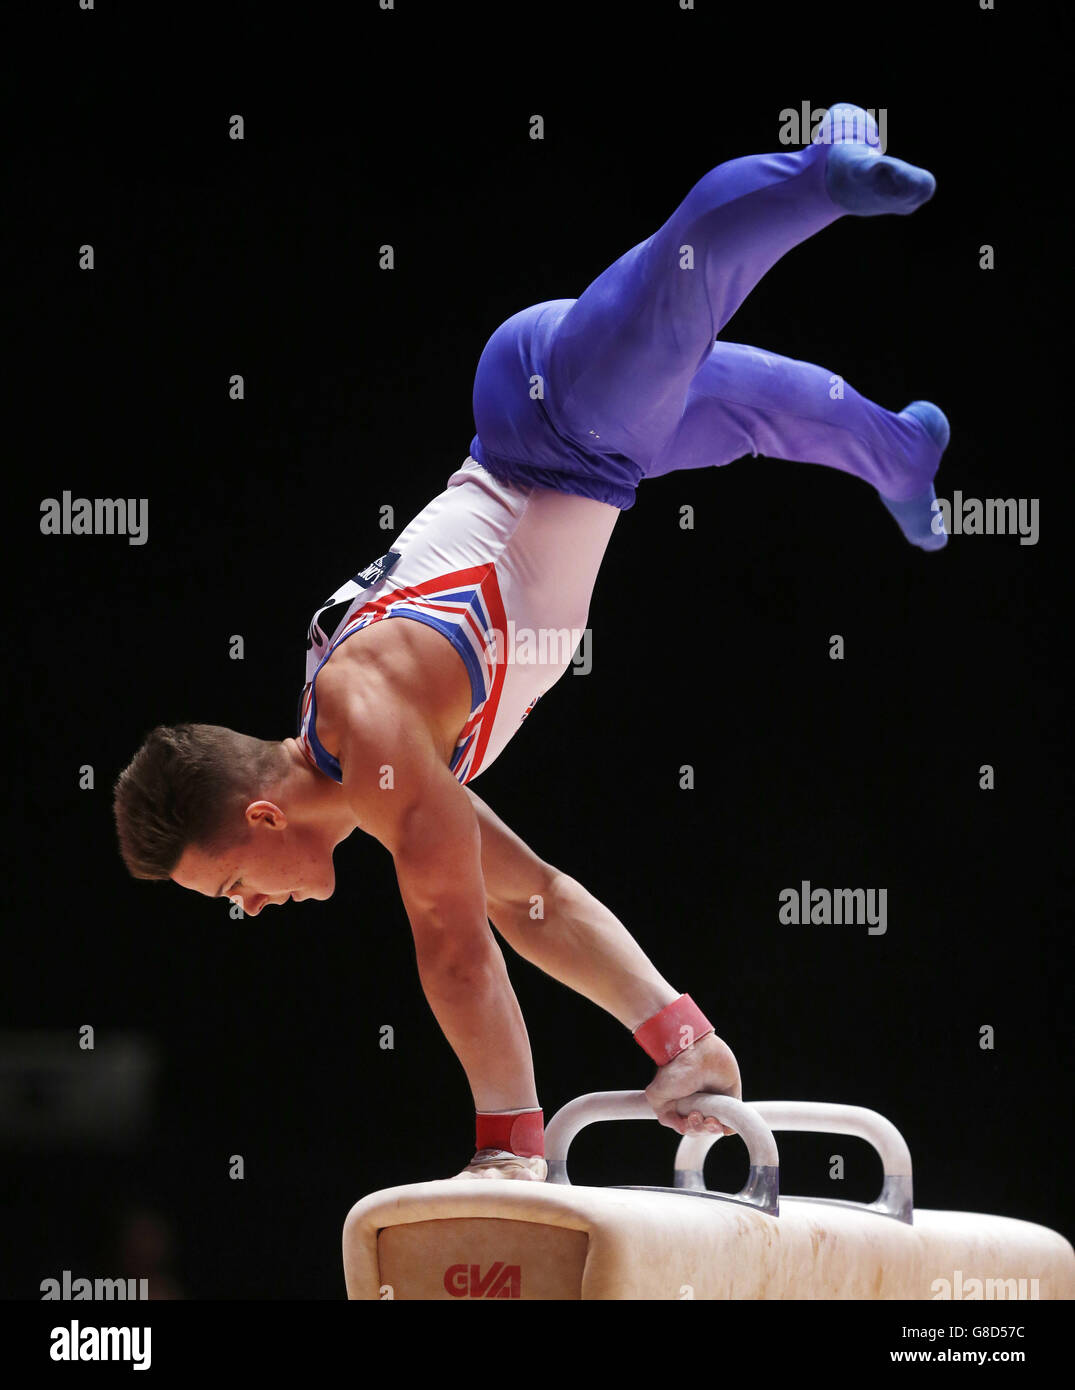 Gymnastik - Weltmeisterschaften 2015 - Tag sechs - das SSE Hydro. Der britische Brinn Bevan tritt am 6. Tag der Weltmeisterschaften 2015 beim SSE Hydro in Glasgow auf dem Pommel Horse an. Stockfoto